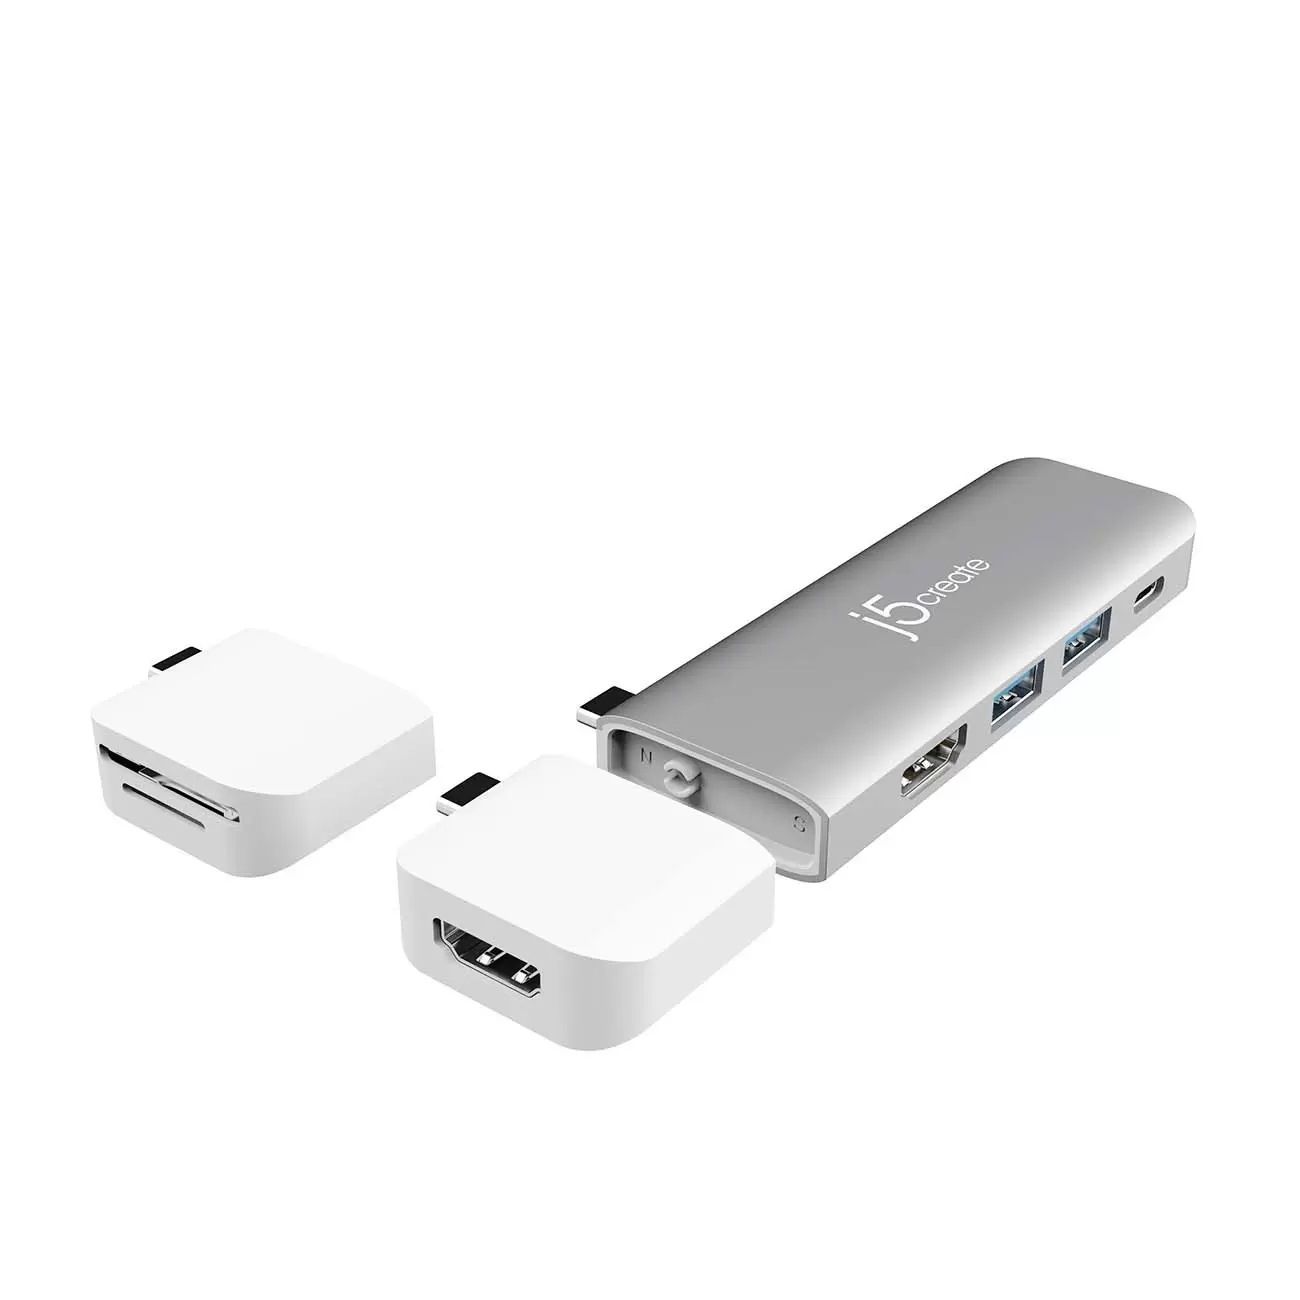 j5create ULTRADRIVE Kit USB-C Dual-Display Modular Dock